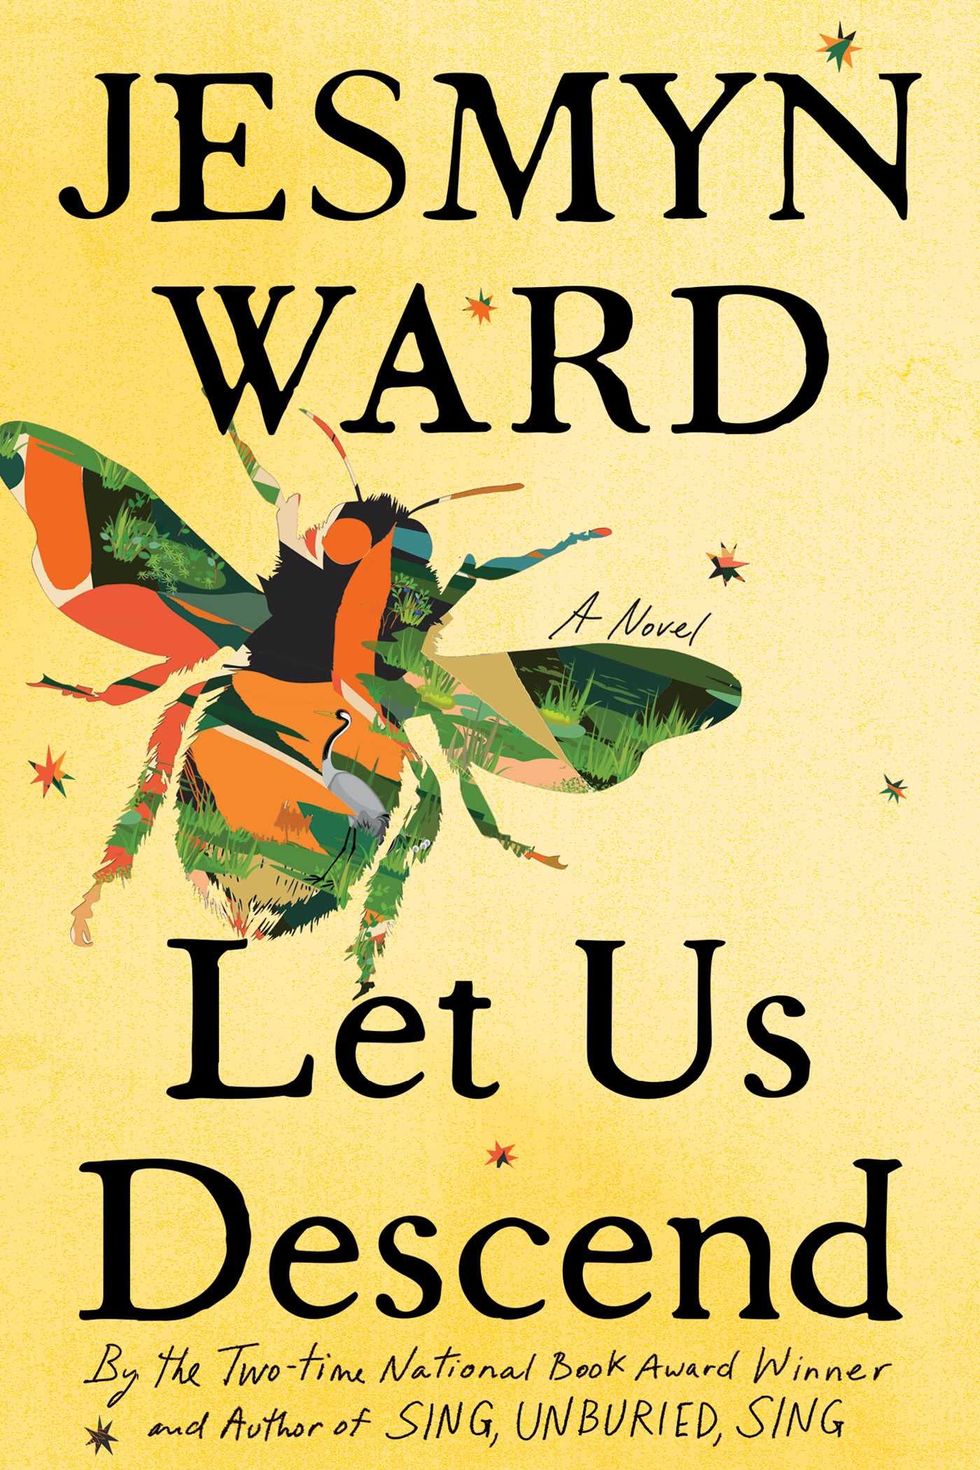 Let Us Descend by Jesmyn Ward